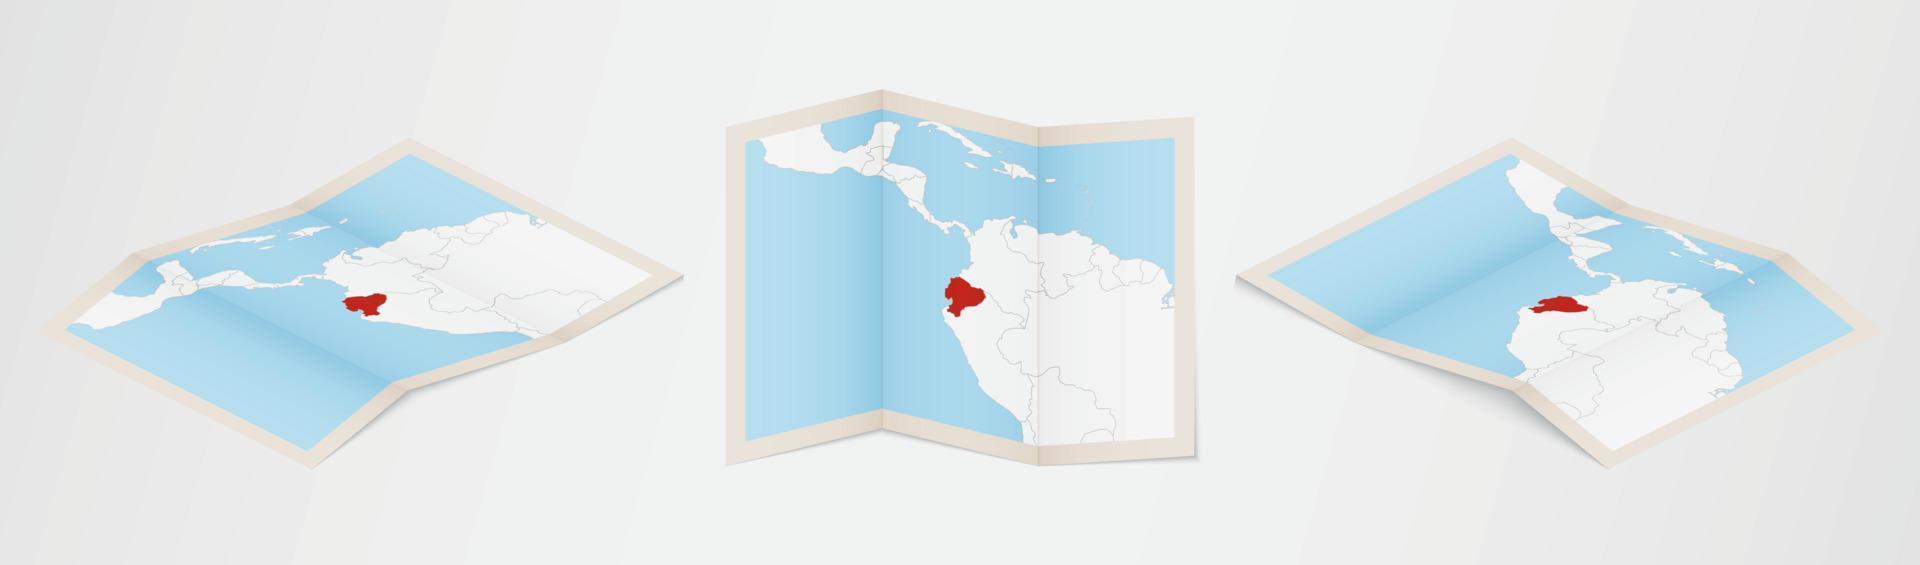 mapa dobrado do equador em três versões diferentes. vetor